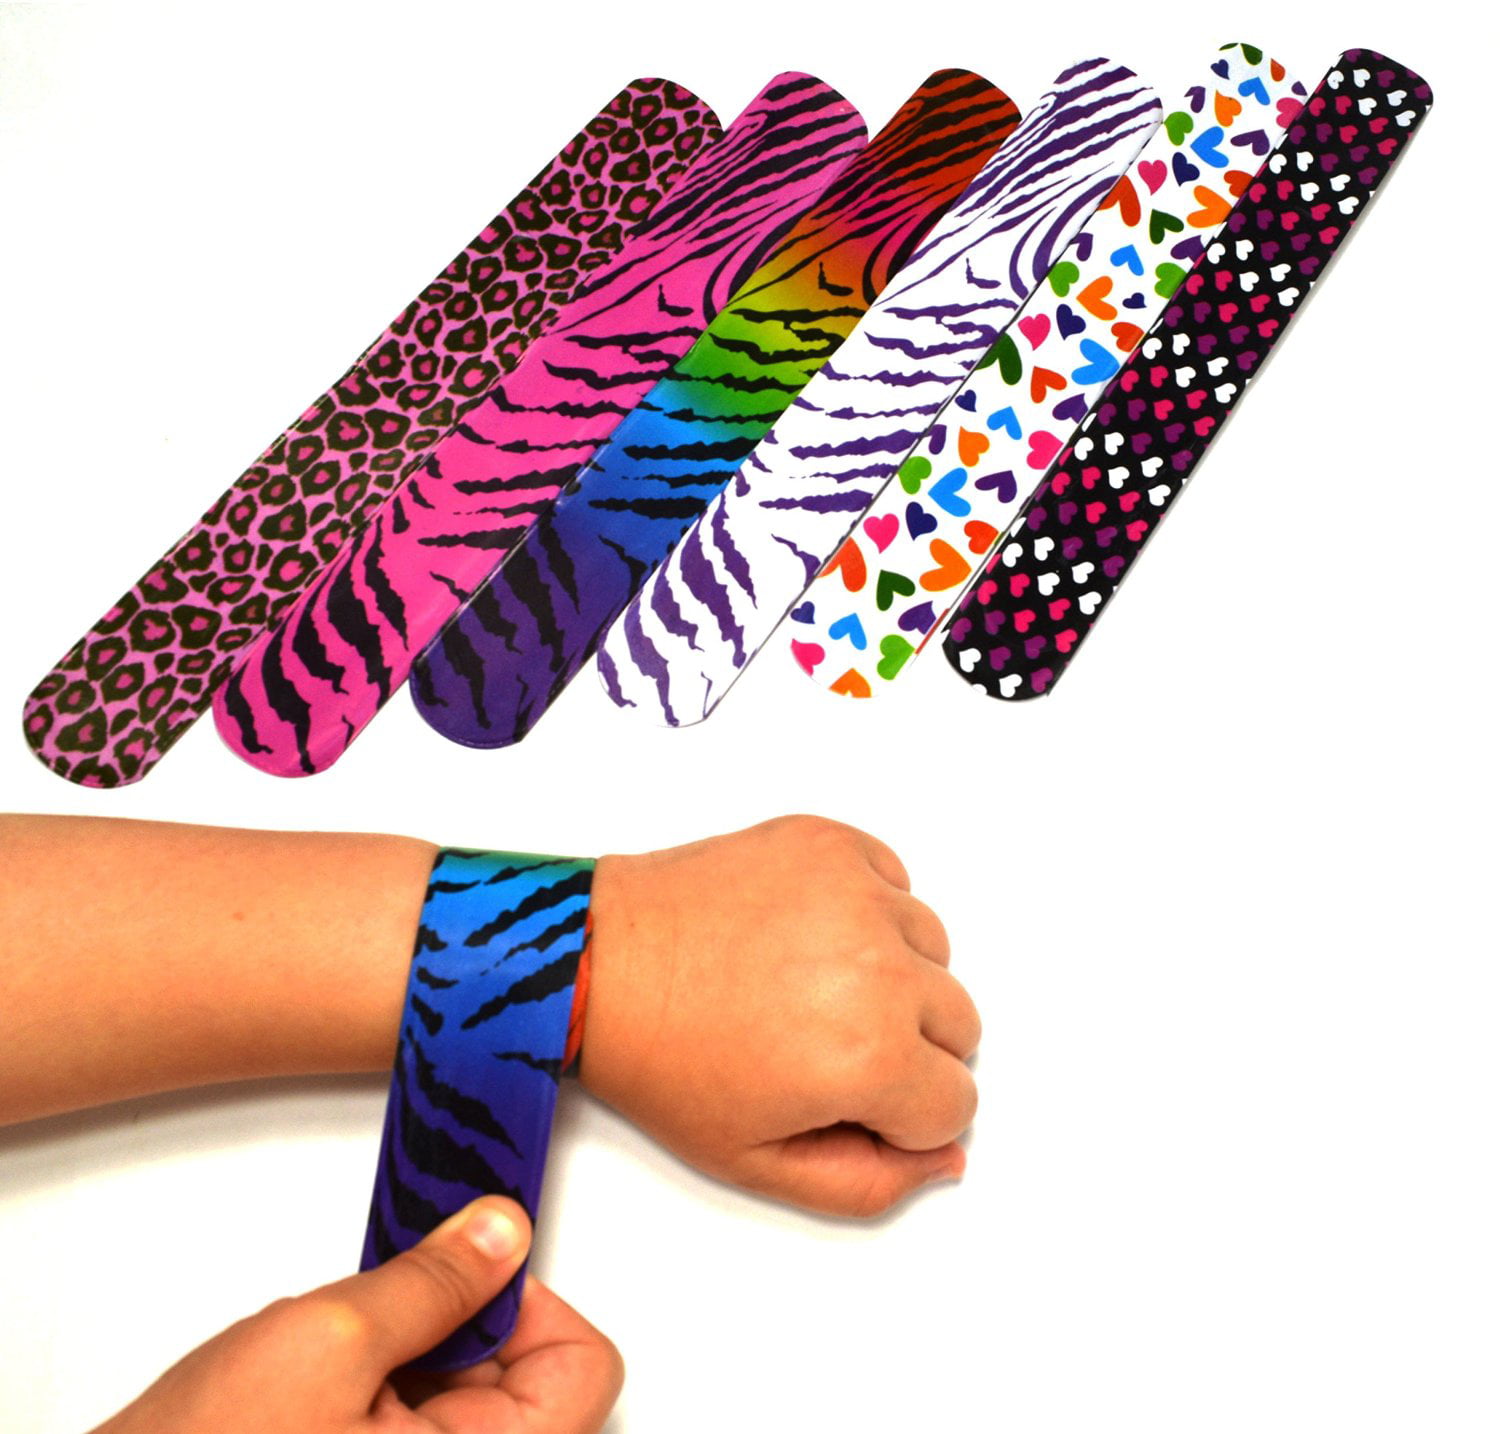 25Pcs Slap Bracelets Animal/Heart Print Slap Band for Kids Gift Bag Party  Favor | eBay